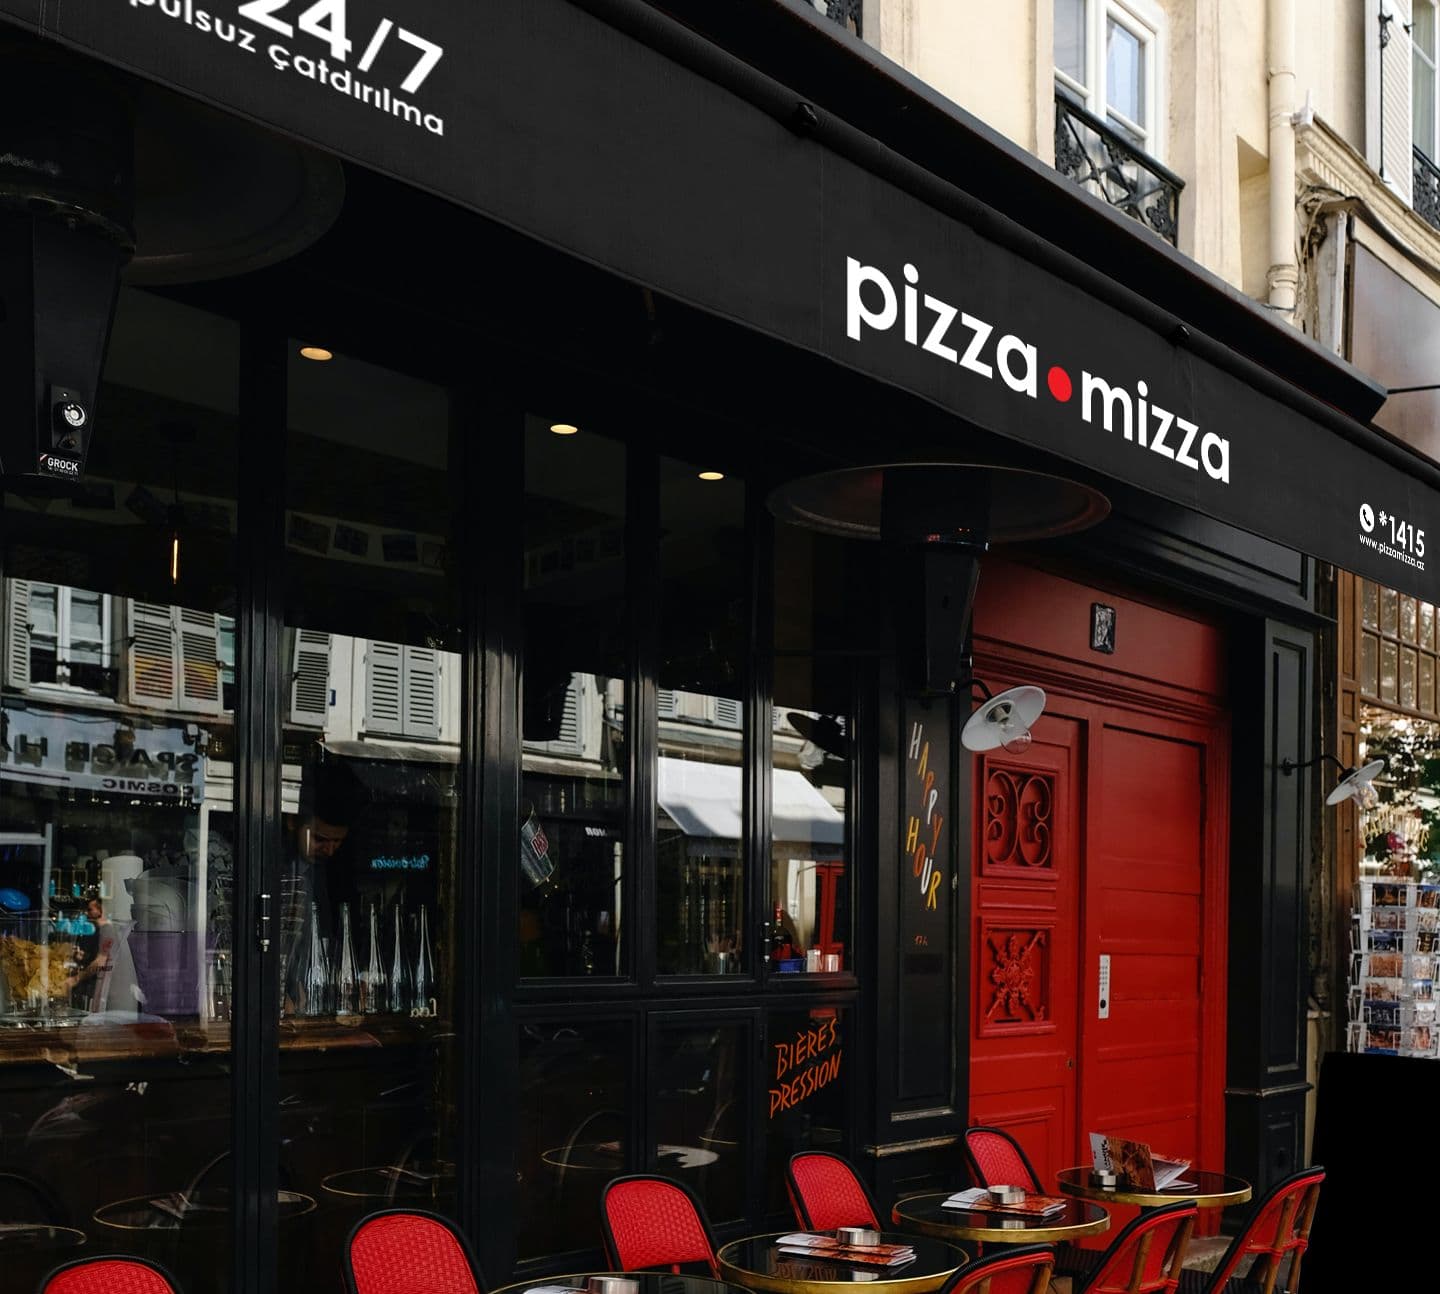 14pizza-mizza-case.jpg